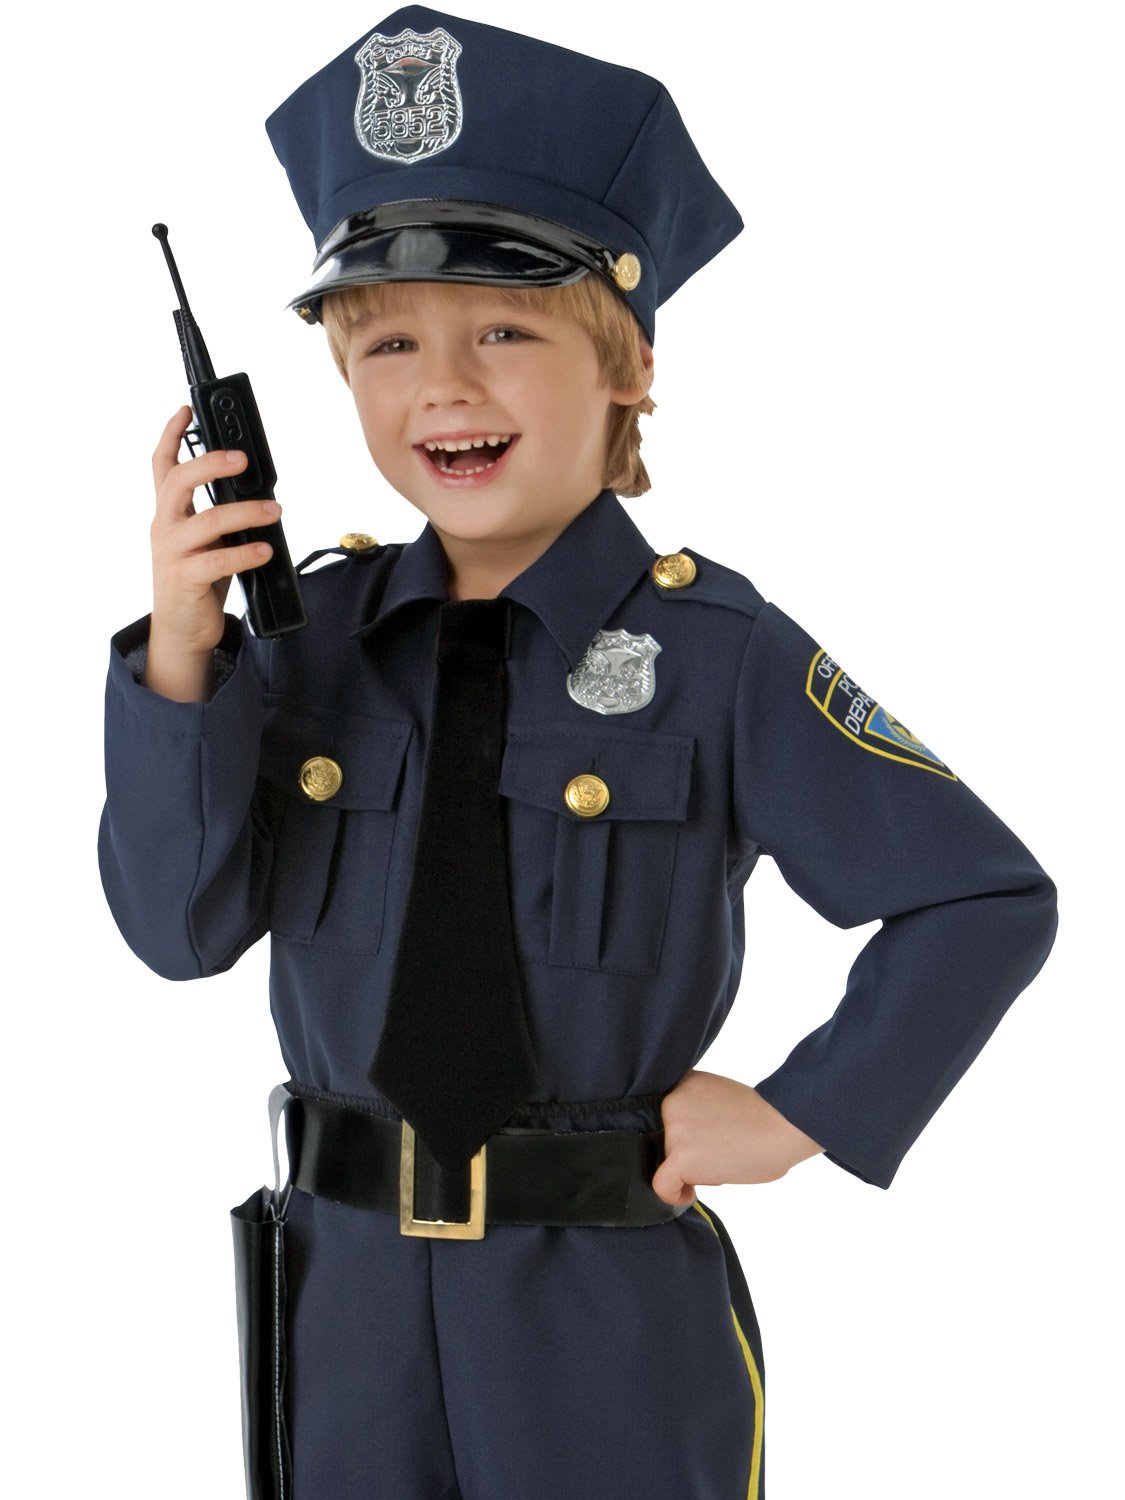 Мальчик милиционер. Полицейская форма для детей. Костюм полицейского детский. Ребенок в костюме милиционера. Костюм милиционера для мальчика.